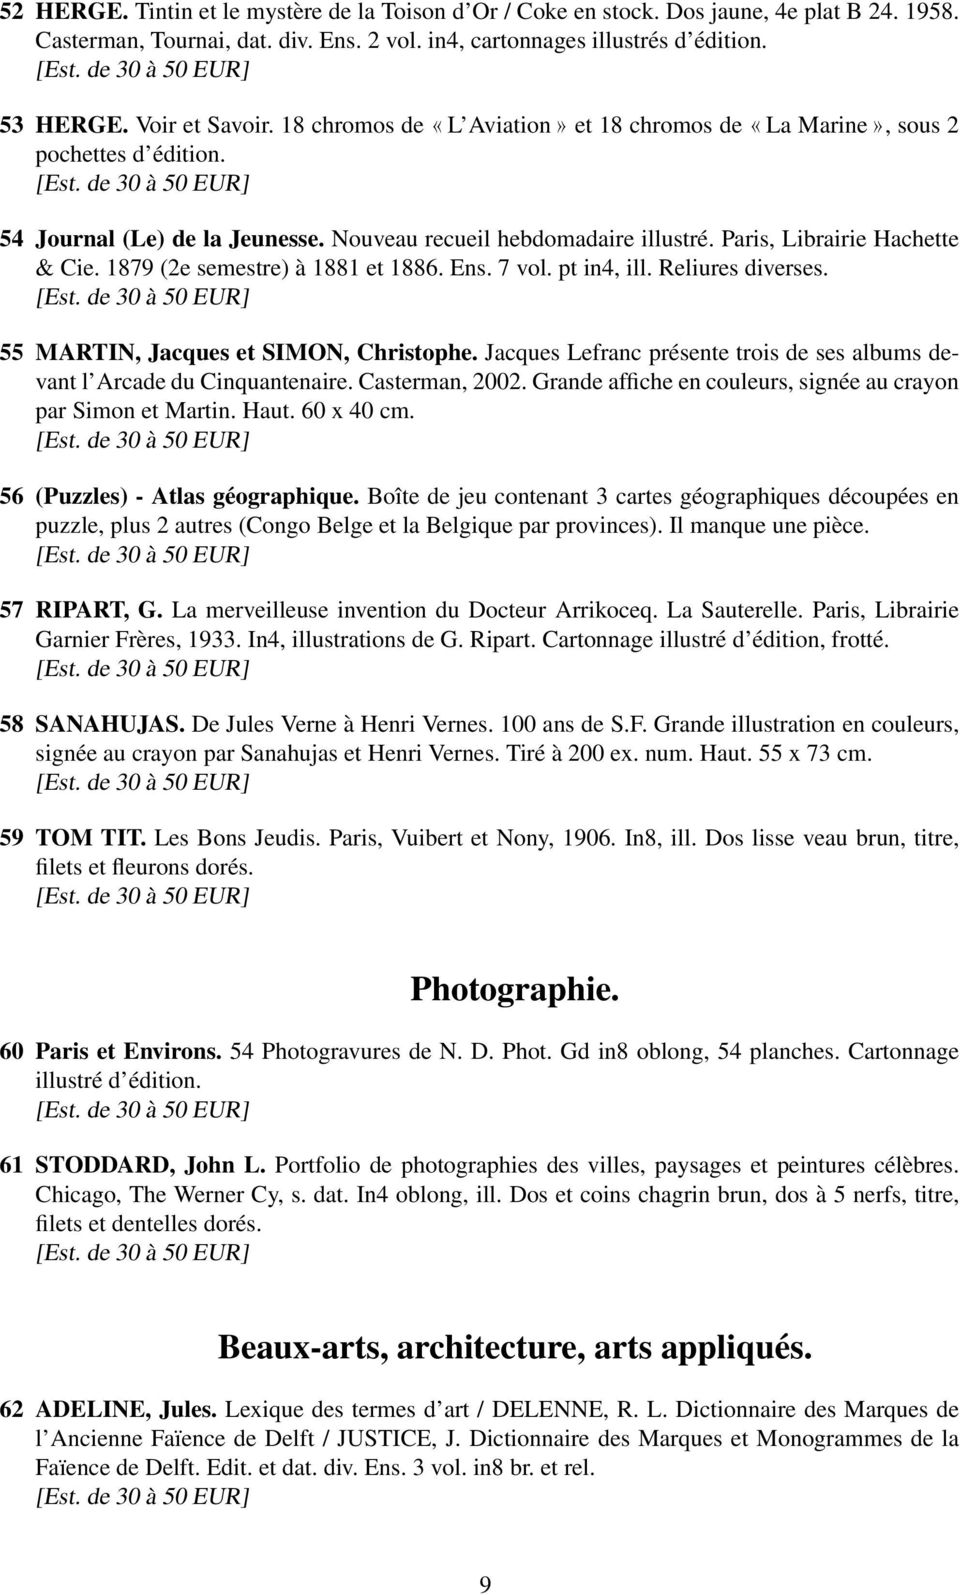 Paris, Librairie Hachette & Cie. 1879 (2e semestre) à 1881 et 1886. Ens. 7 vol. pt in4, ill. Reliures diverses. 55 MARTIN, Jacques et SIMON, Christophe.